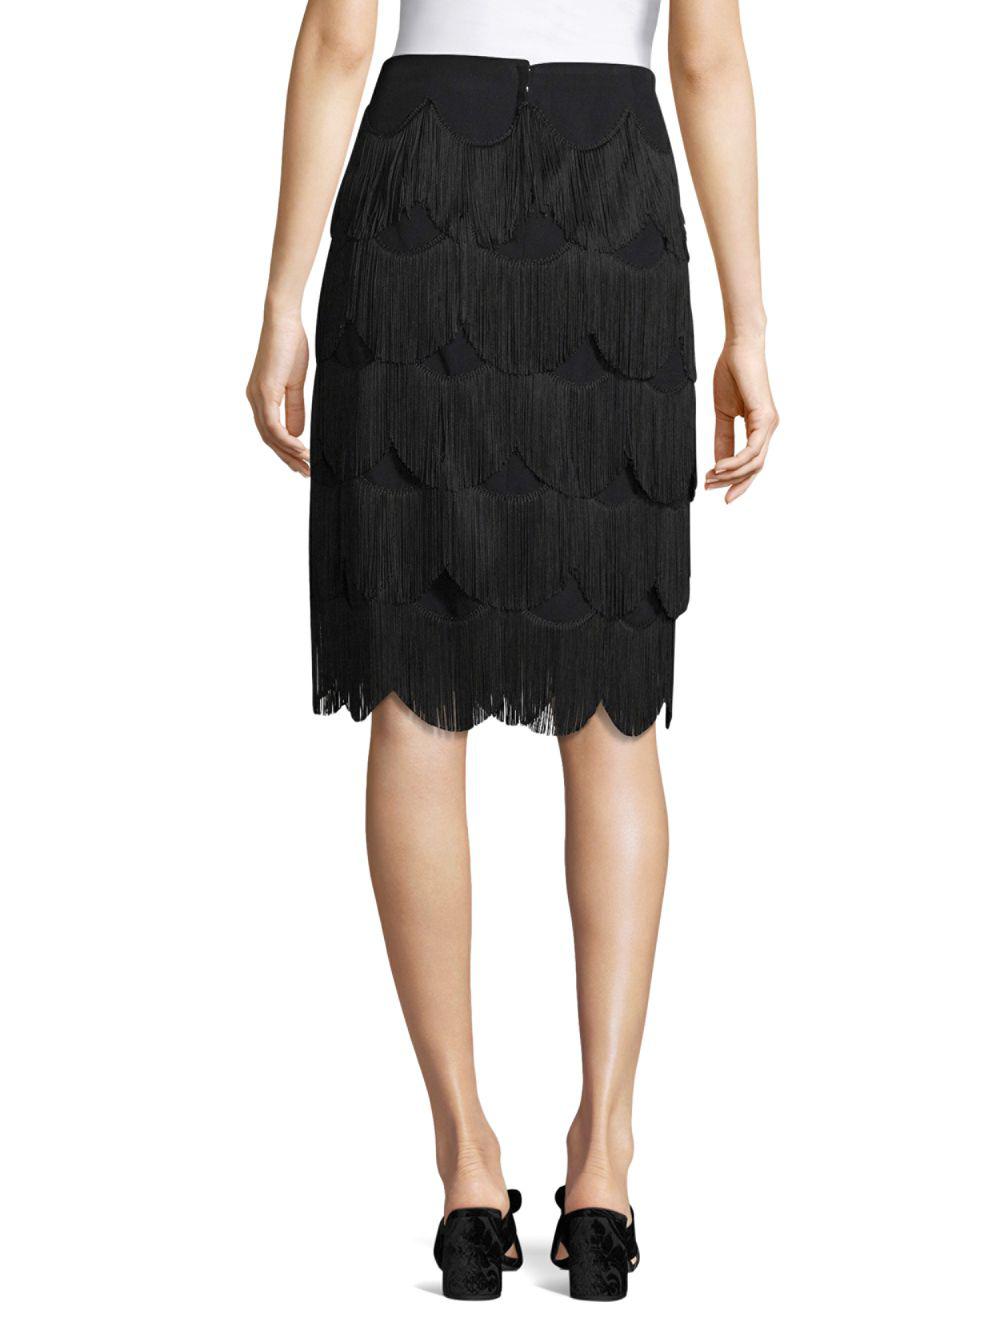 Marc Jacobs Silk Knee-length Fringe Skirt in Black - Lyst